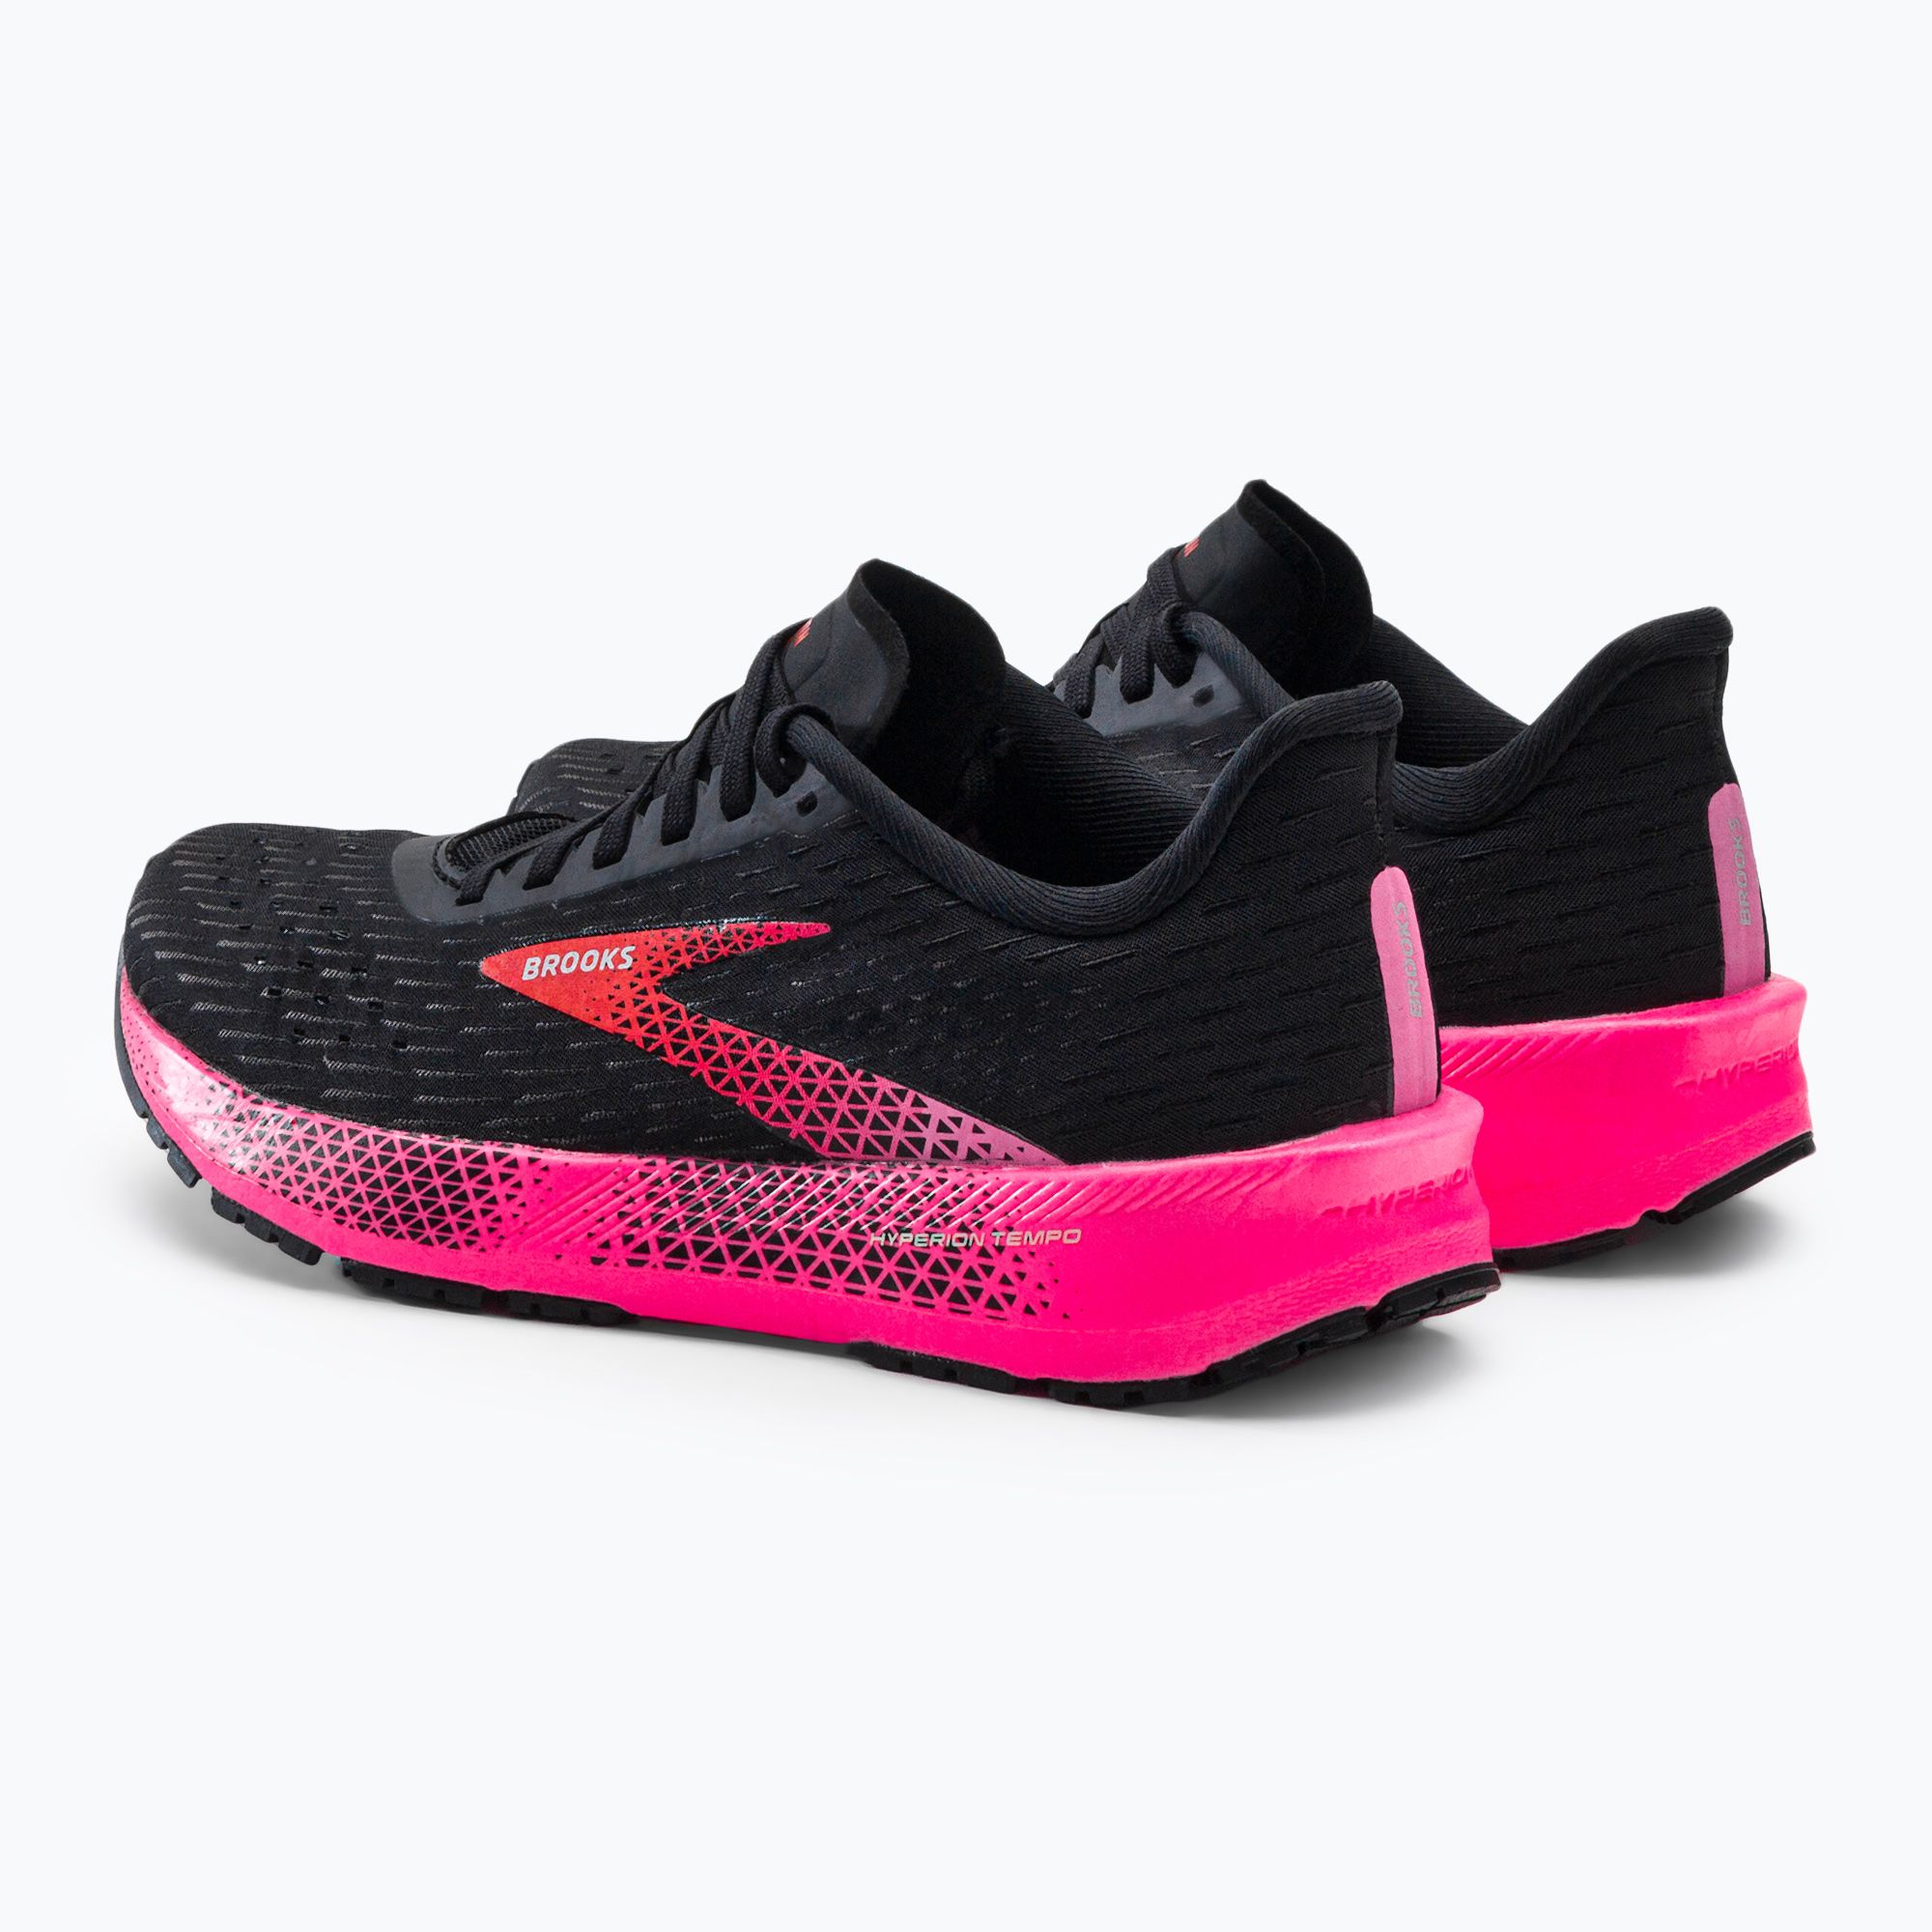 Buty do biegania damskie Brooks Hyperion Tempo black/pink/hot coral zdjęcie nr 3